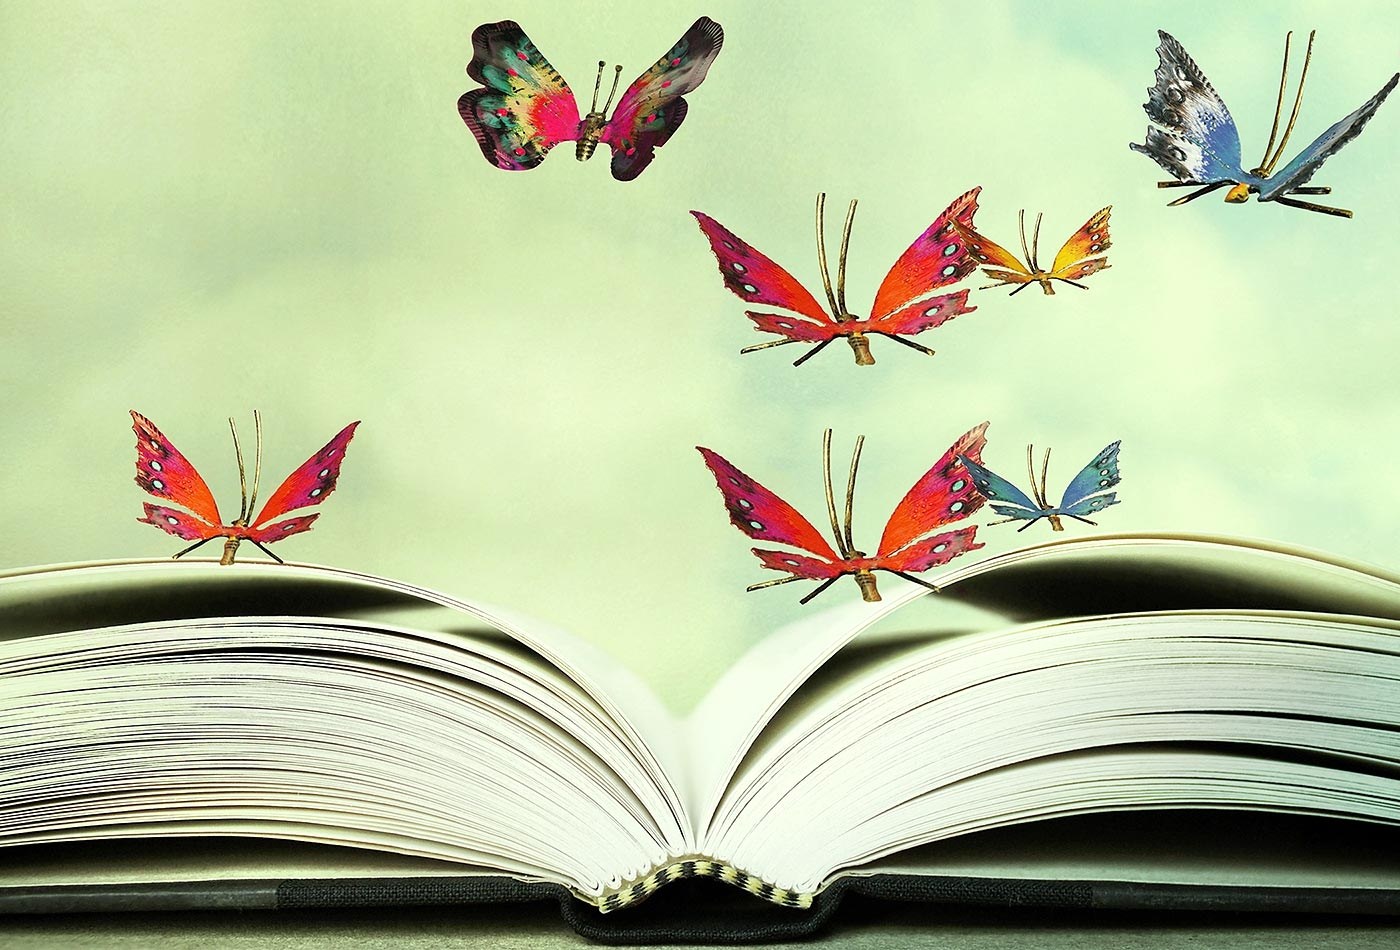 Красивые рисунки книг. Книга с бабочками. Раскрытая книга. Бабочка вылетающая из книги. Поэзия картинки.